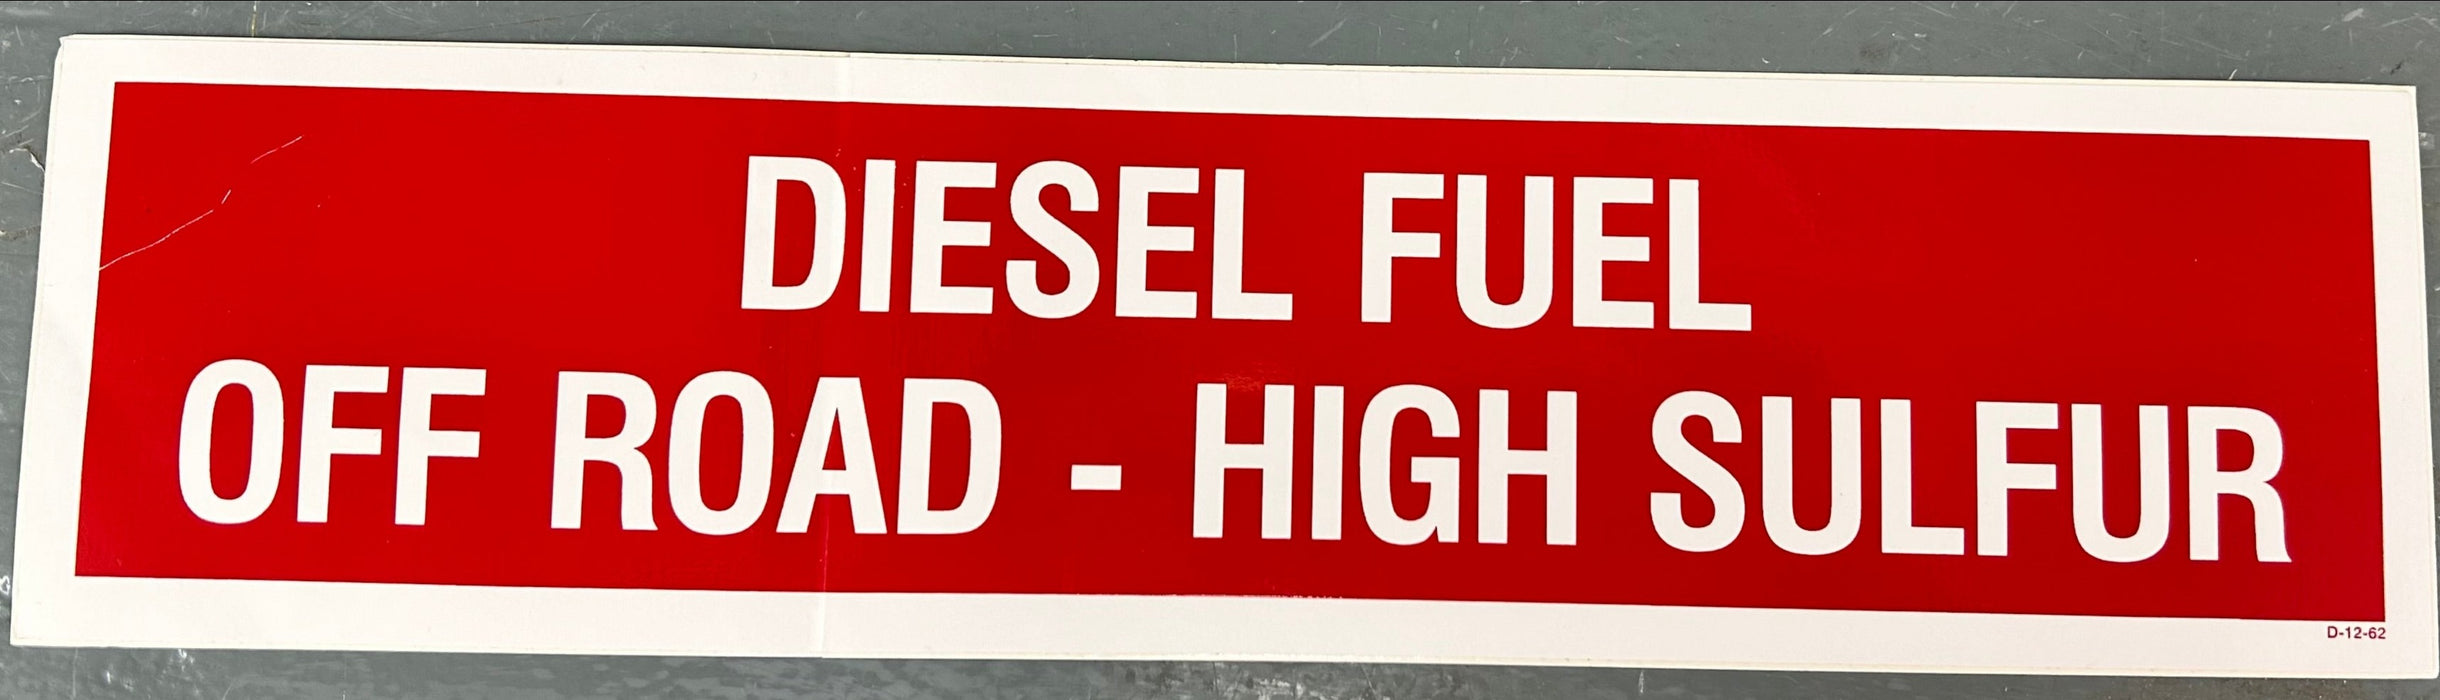 DIESEL FUEL OFF ROAD-HIGH SULFUR DECAL